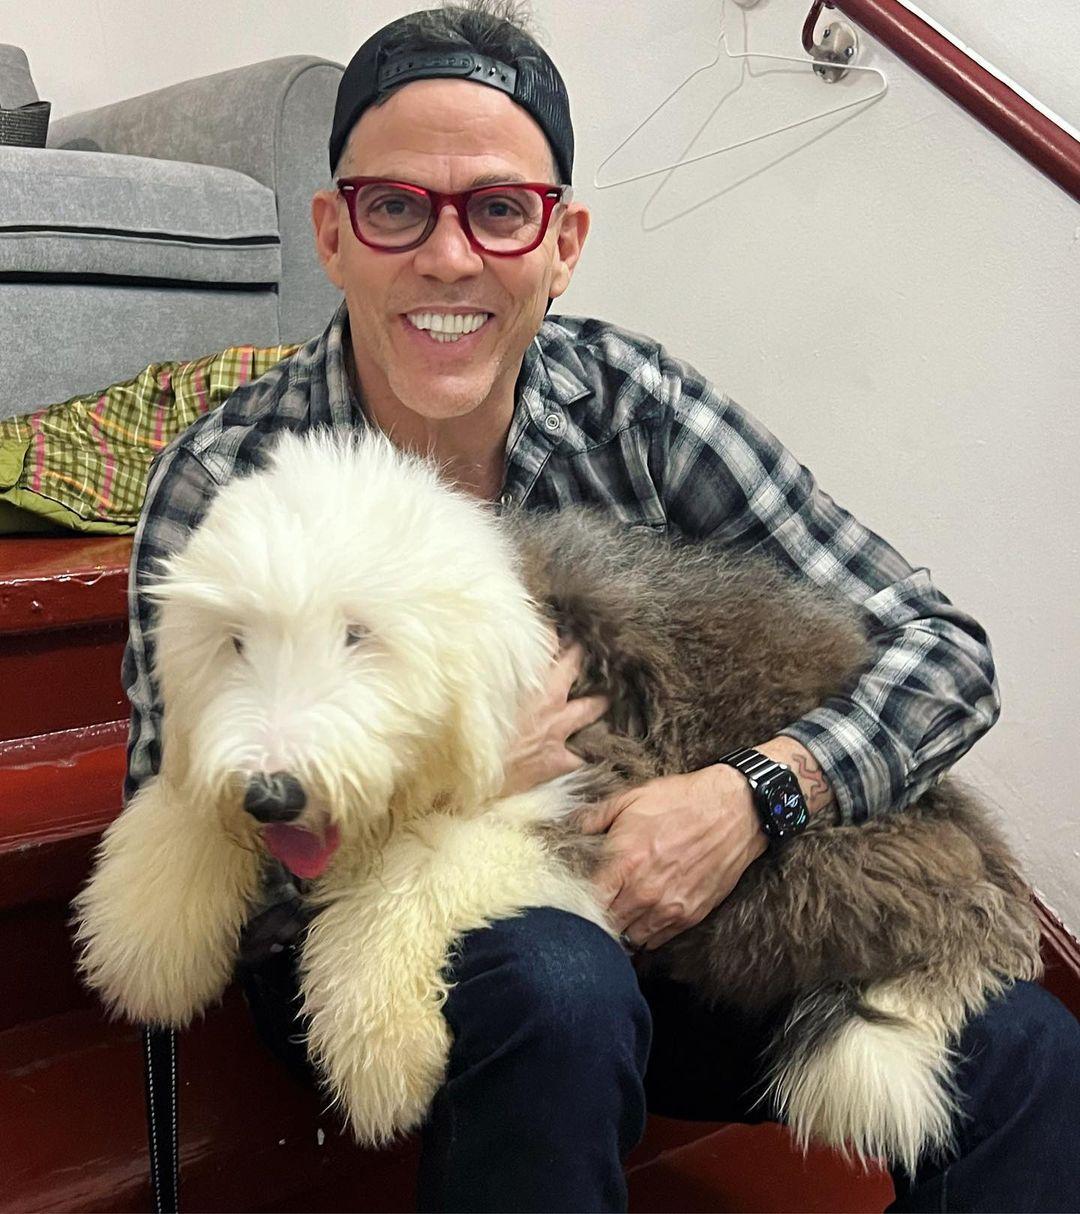 Steve-O with a dog